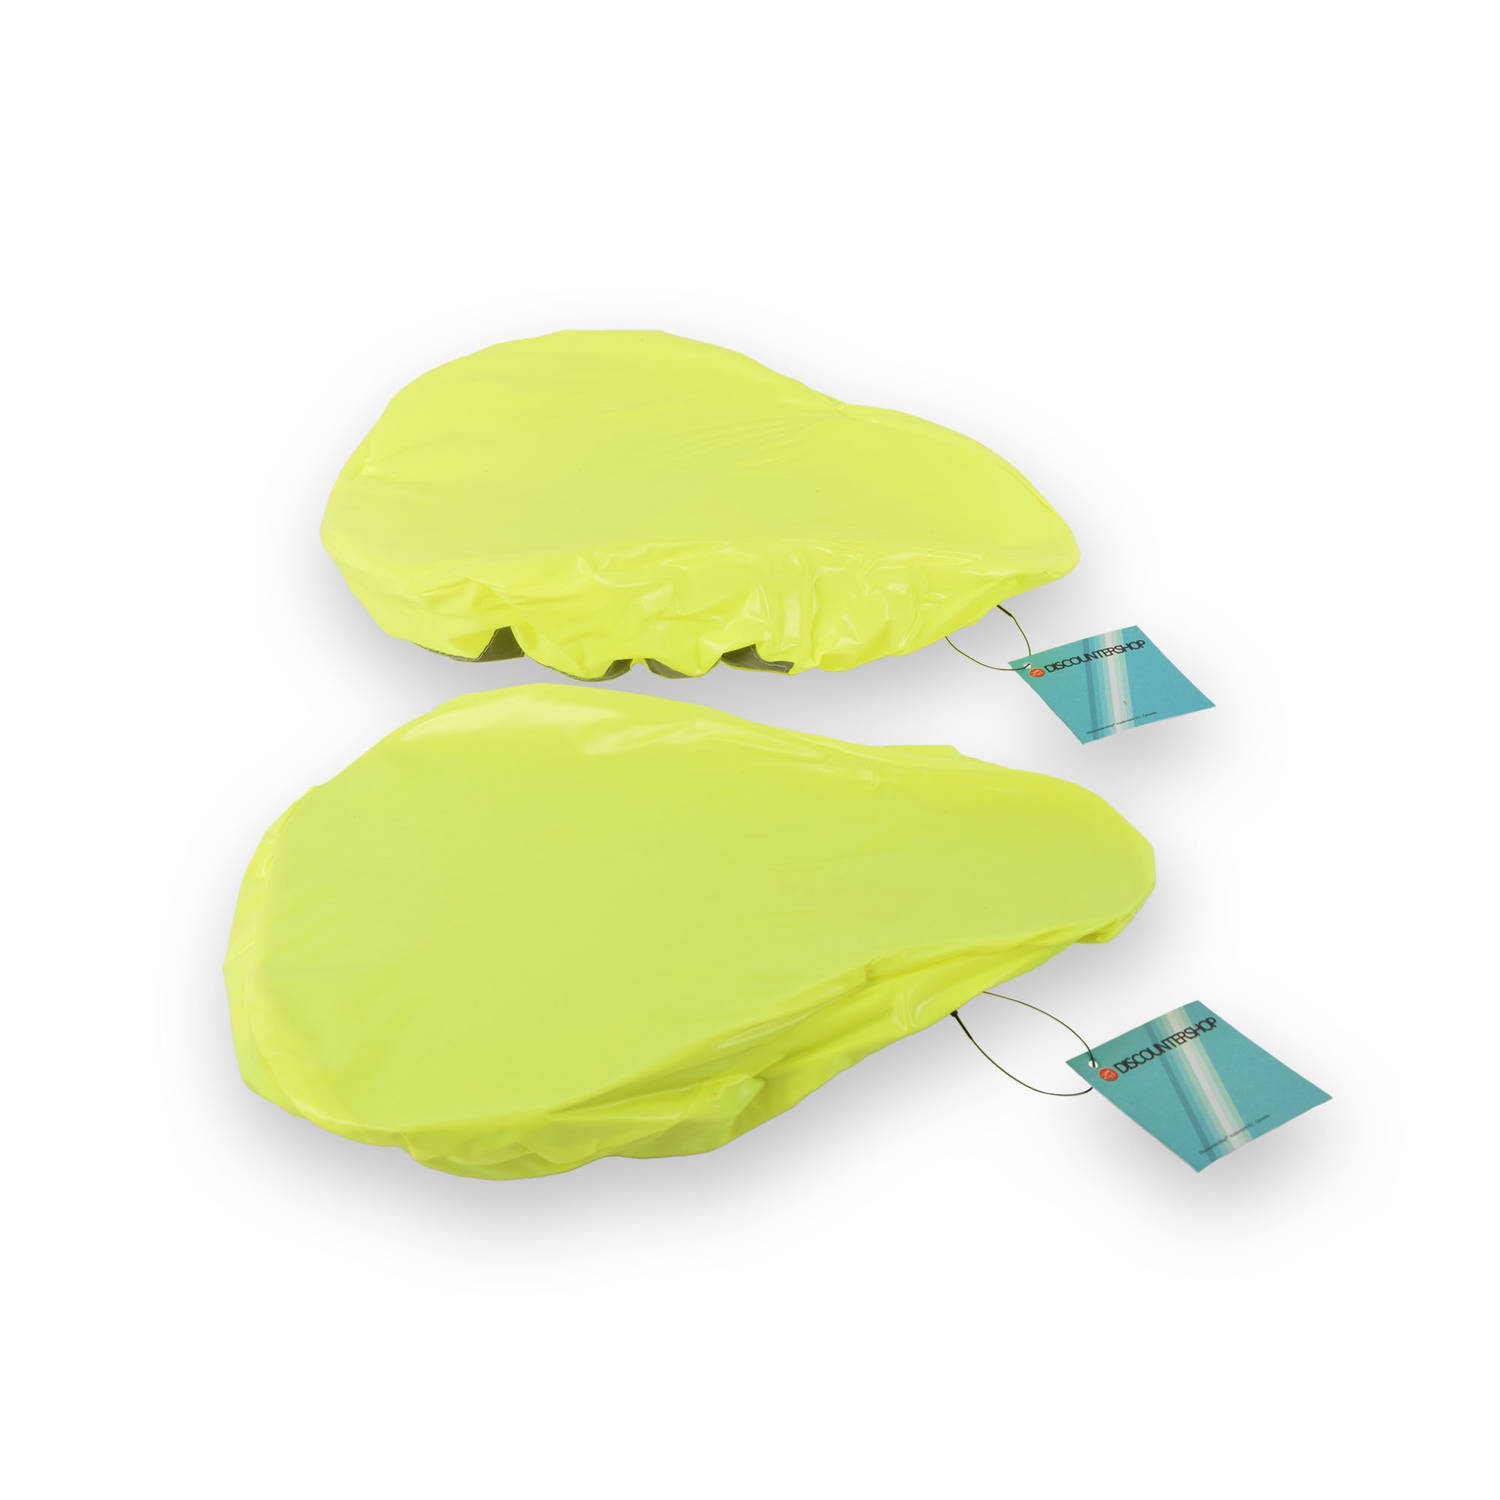 Duo Waterdichte Zadelhoezen voor Fiets - Groen Neon - Polyester - Met Reflecterende Strepen - Set van 2 Stuks - 22cm x 8cm x 4cm